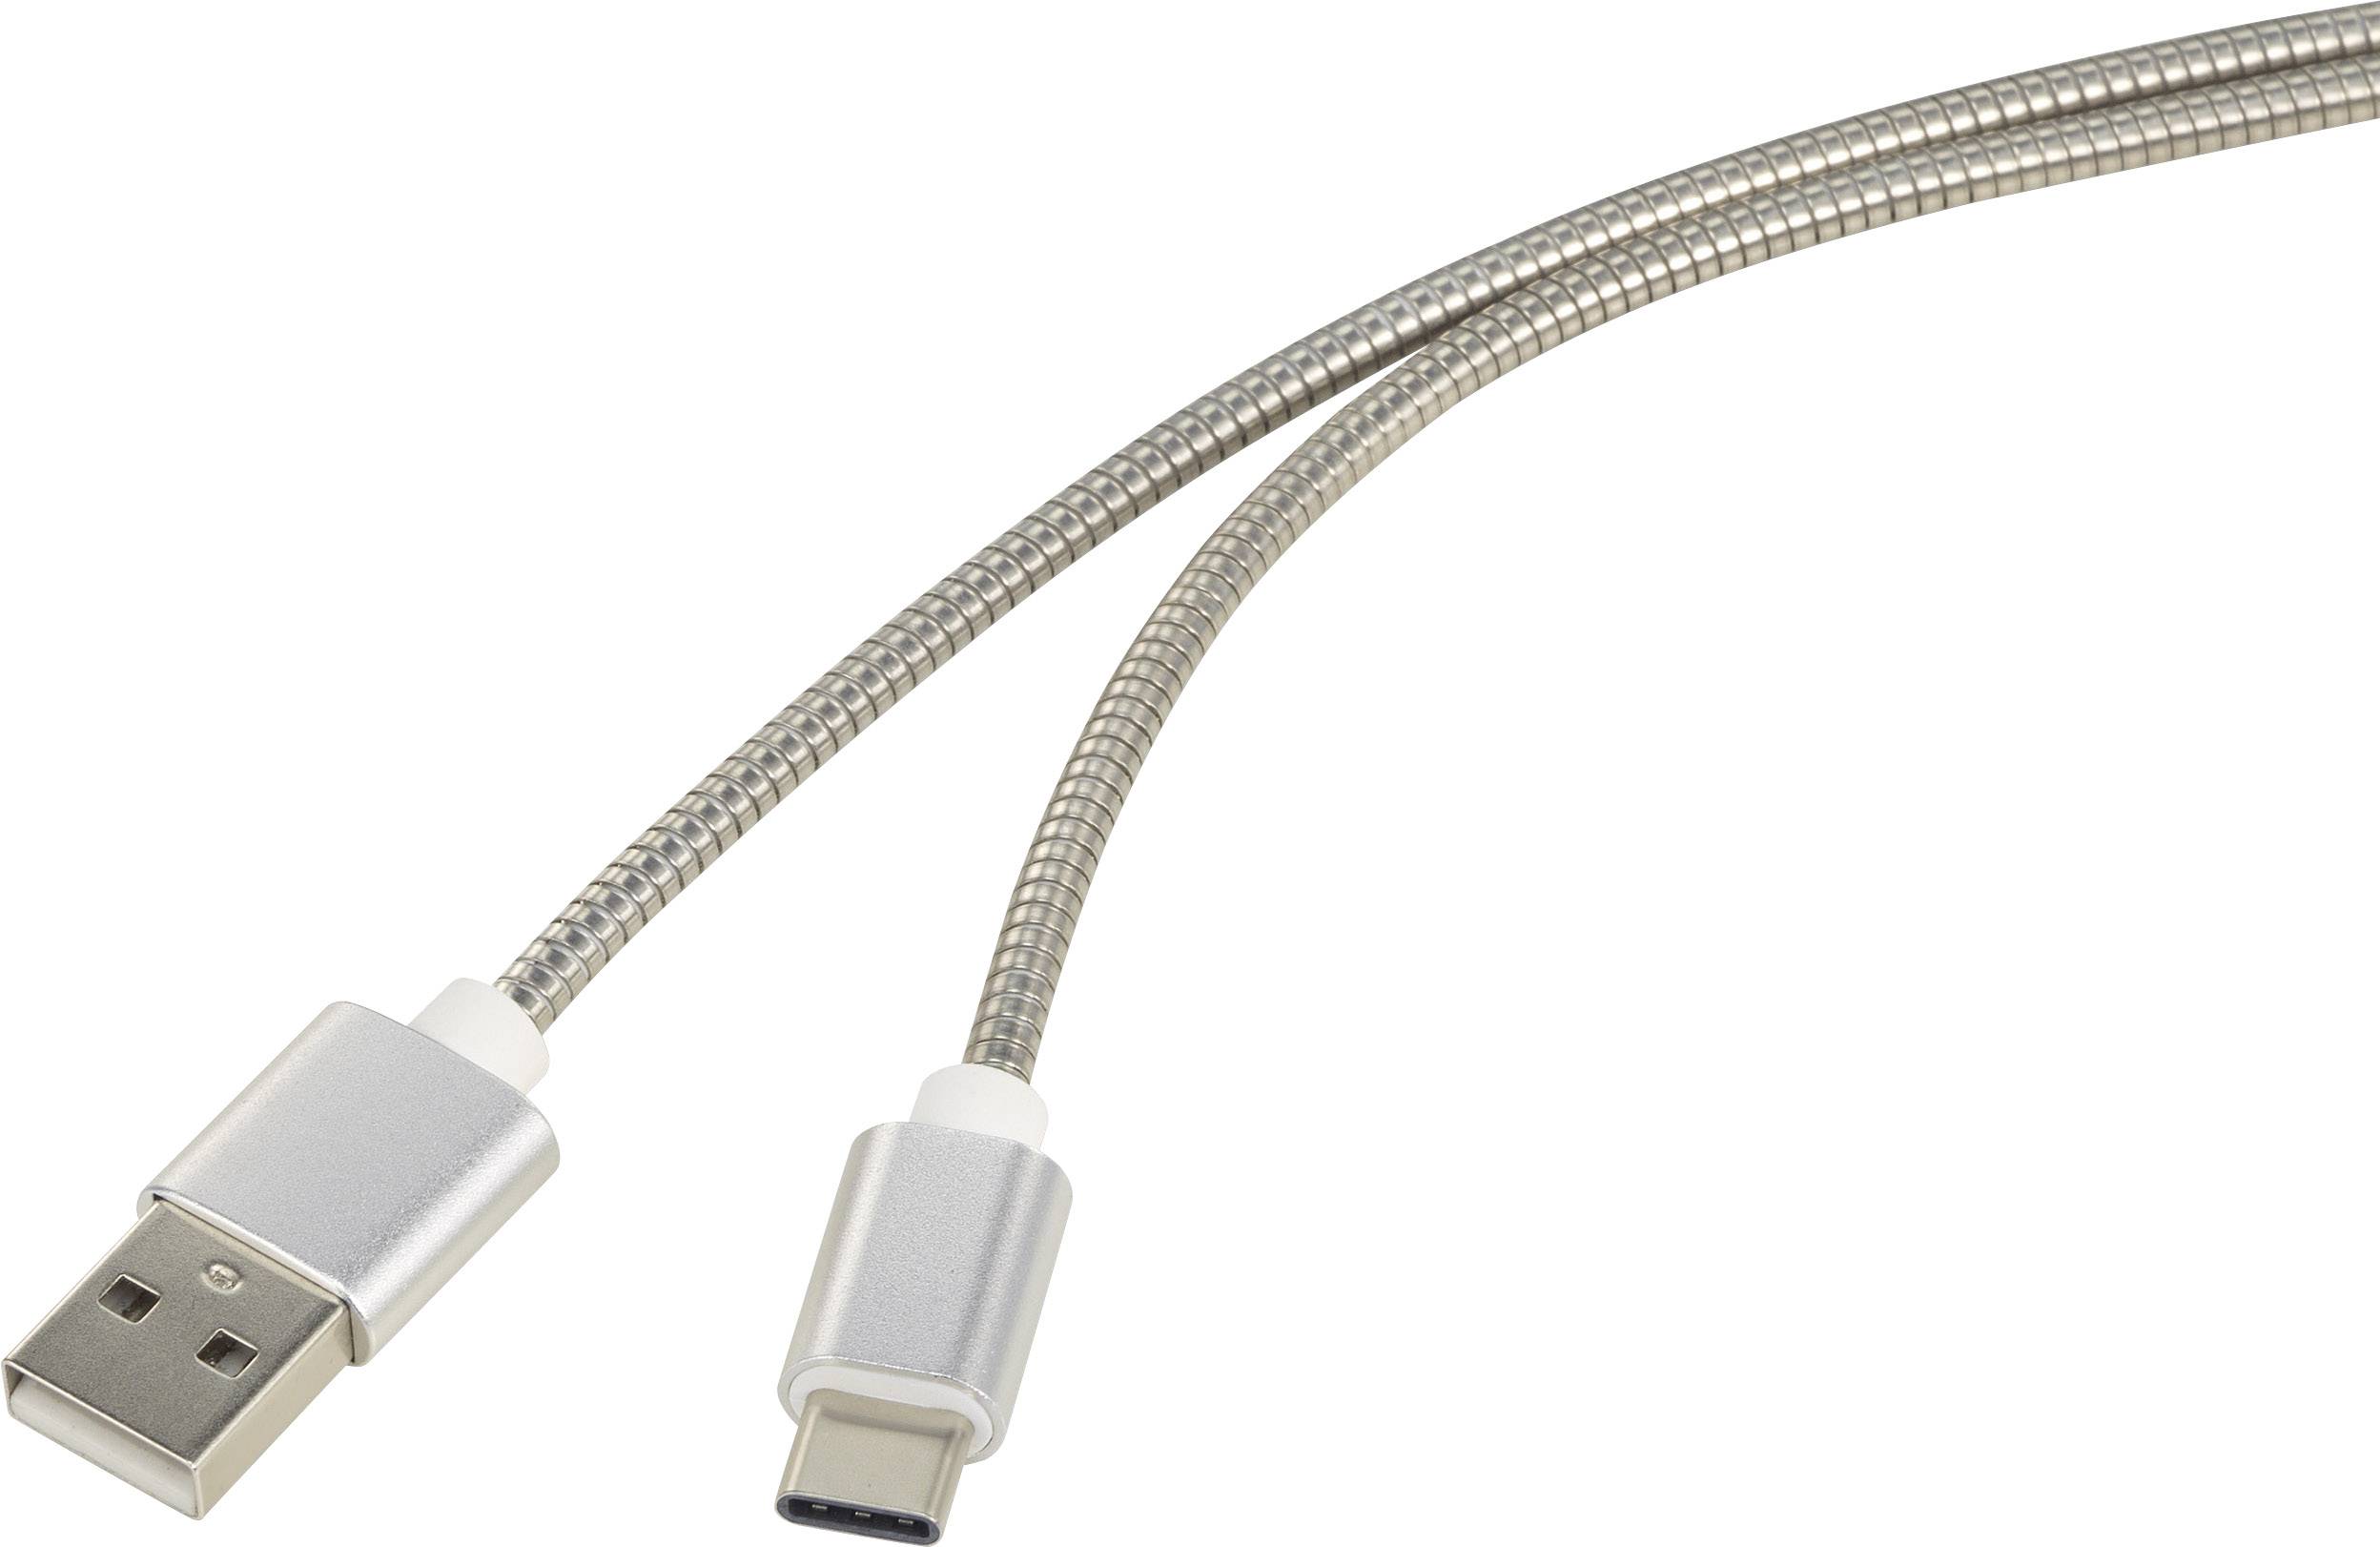 CONRAD Renkforce USB 2.0 Anschlusskabel [1x USB 2.0 Stecker A - 1x USB-C? Stecker] 1 m Silber Kabelm